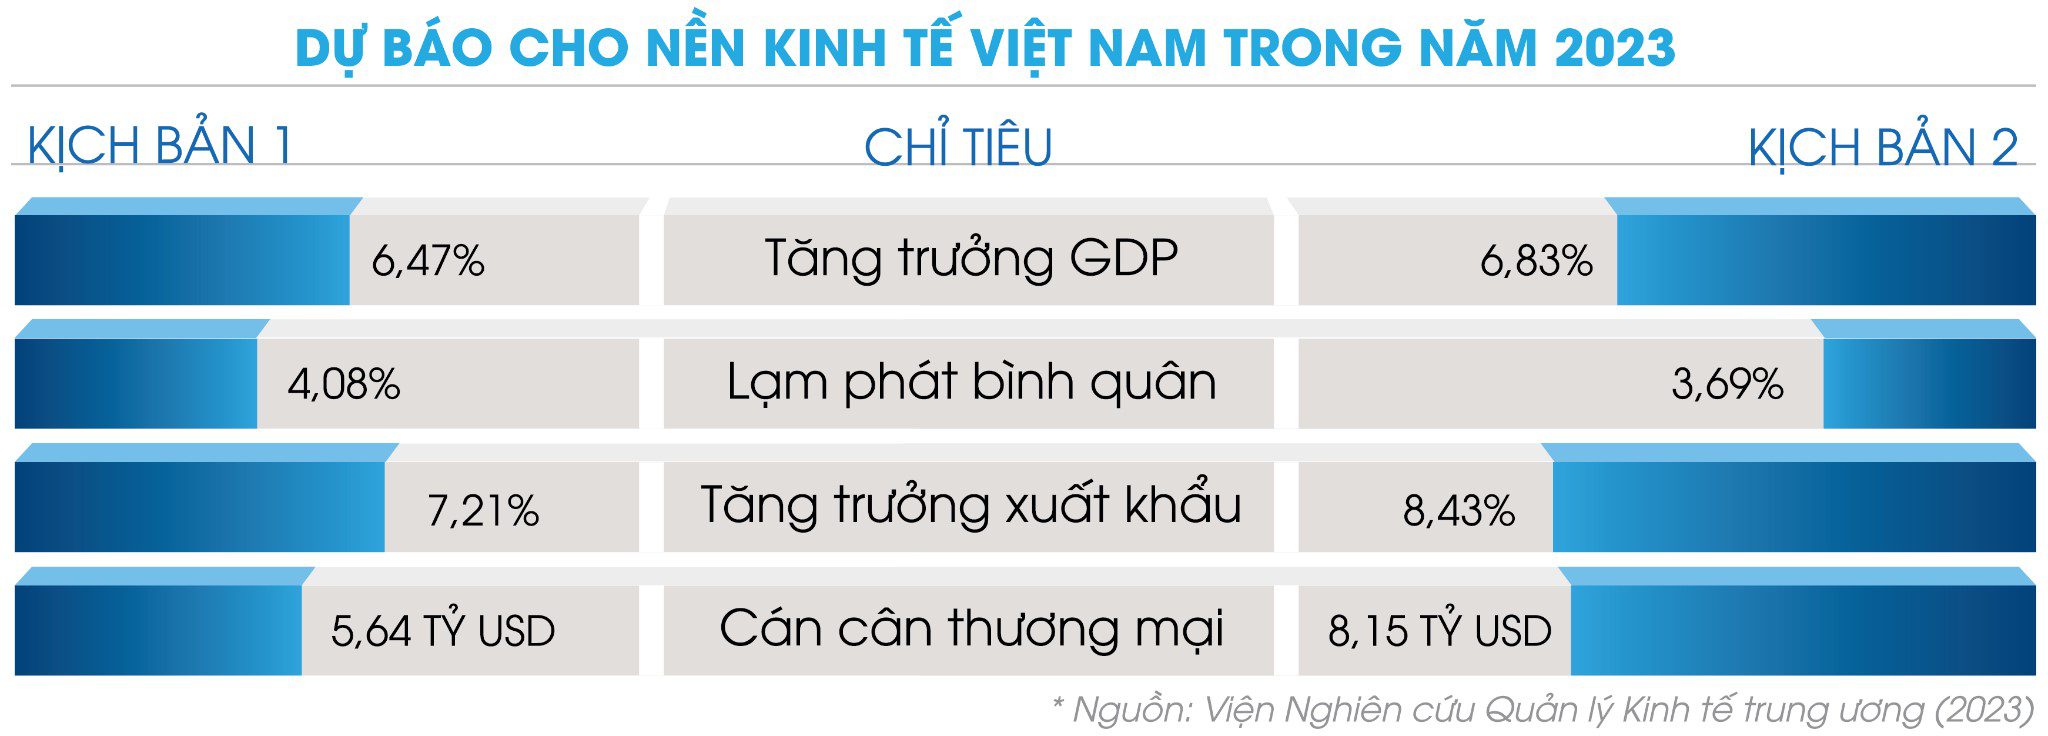 Dự báo cho nền kinh tế Việt Nam trong năm 2023